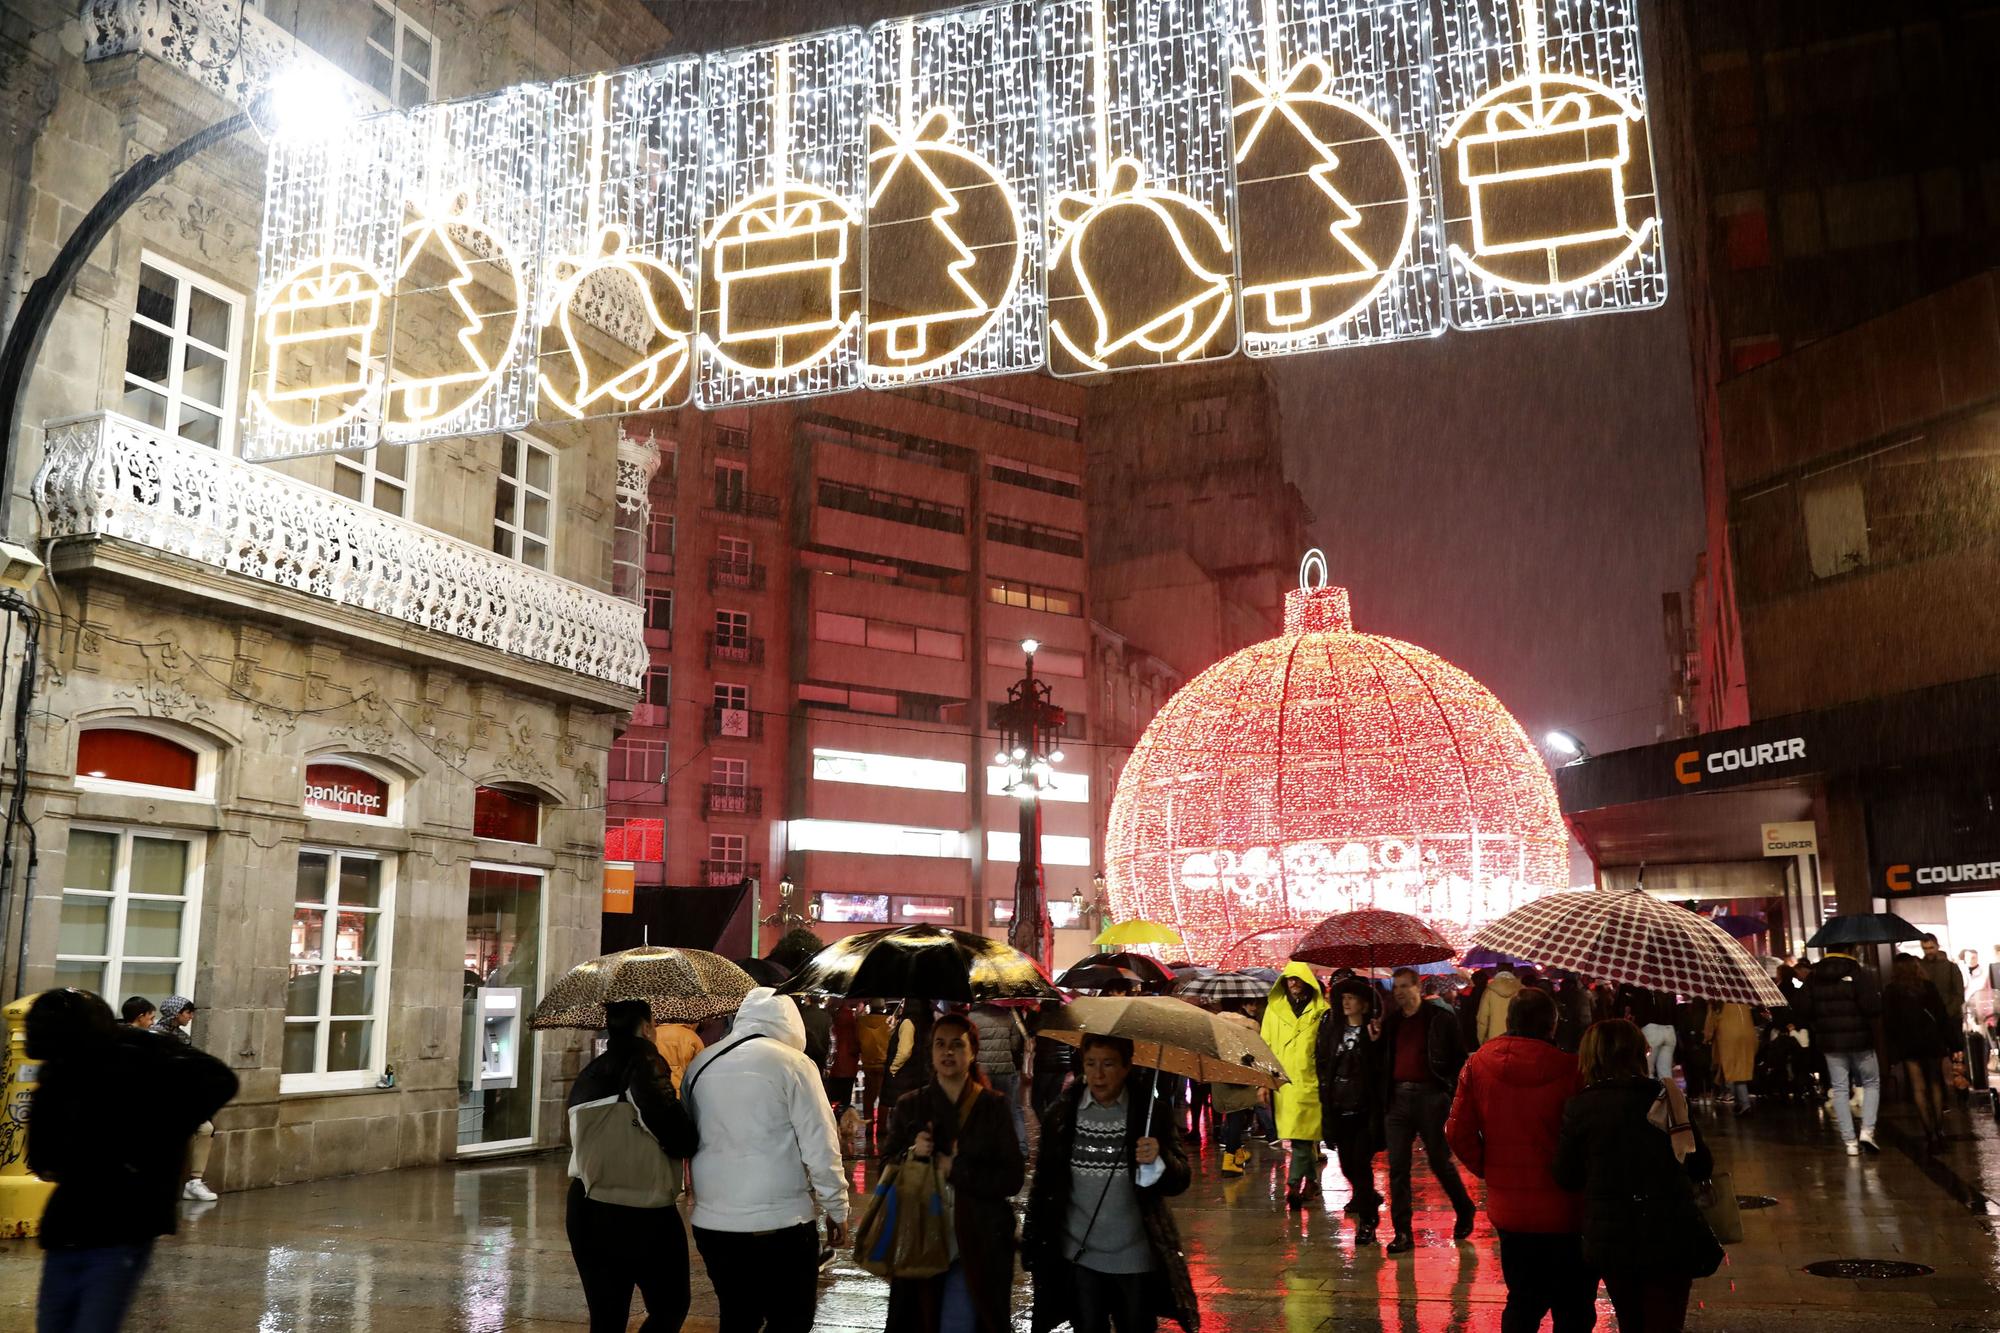 Luces de Navidad en Vigo: este es el recorrido completo por la iluminación más famosa "del planeta"